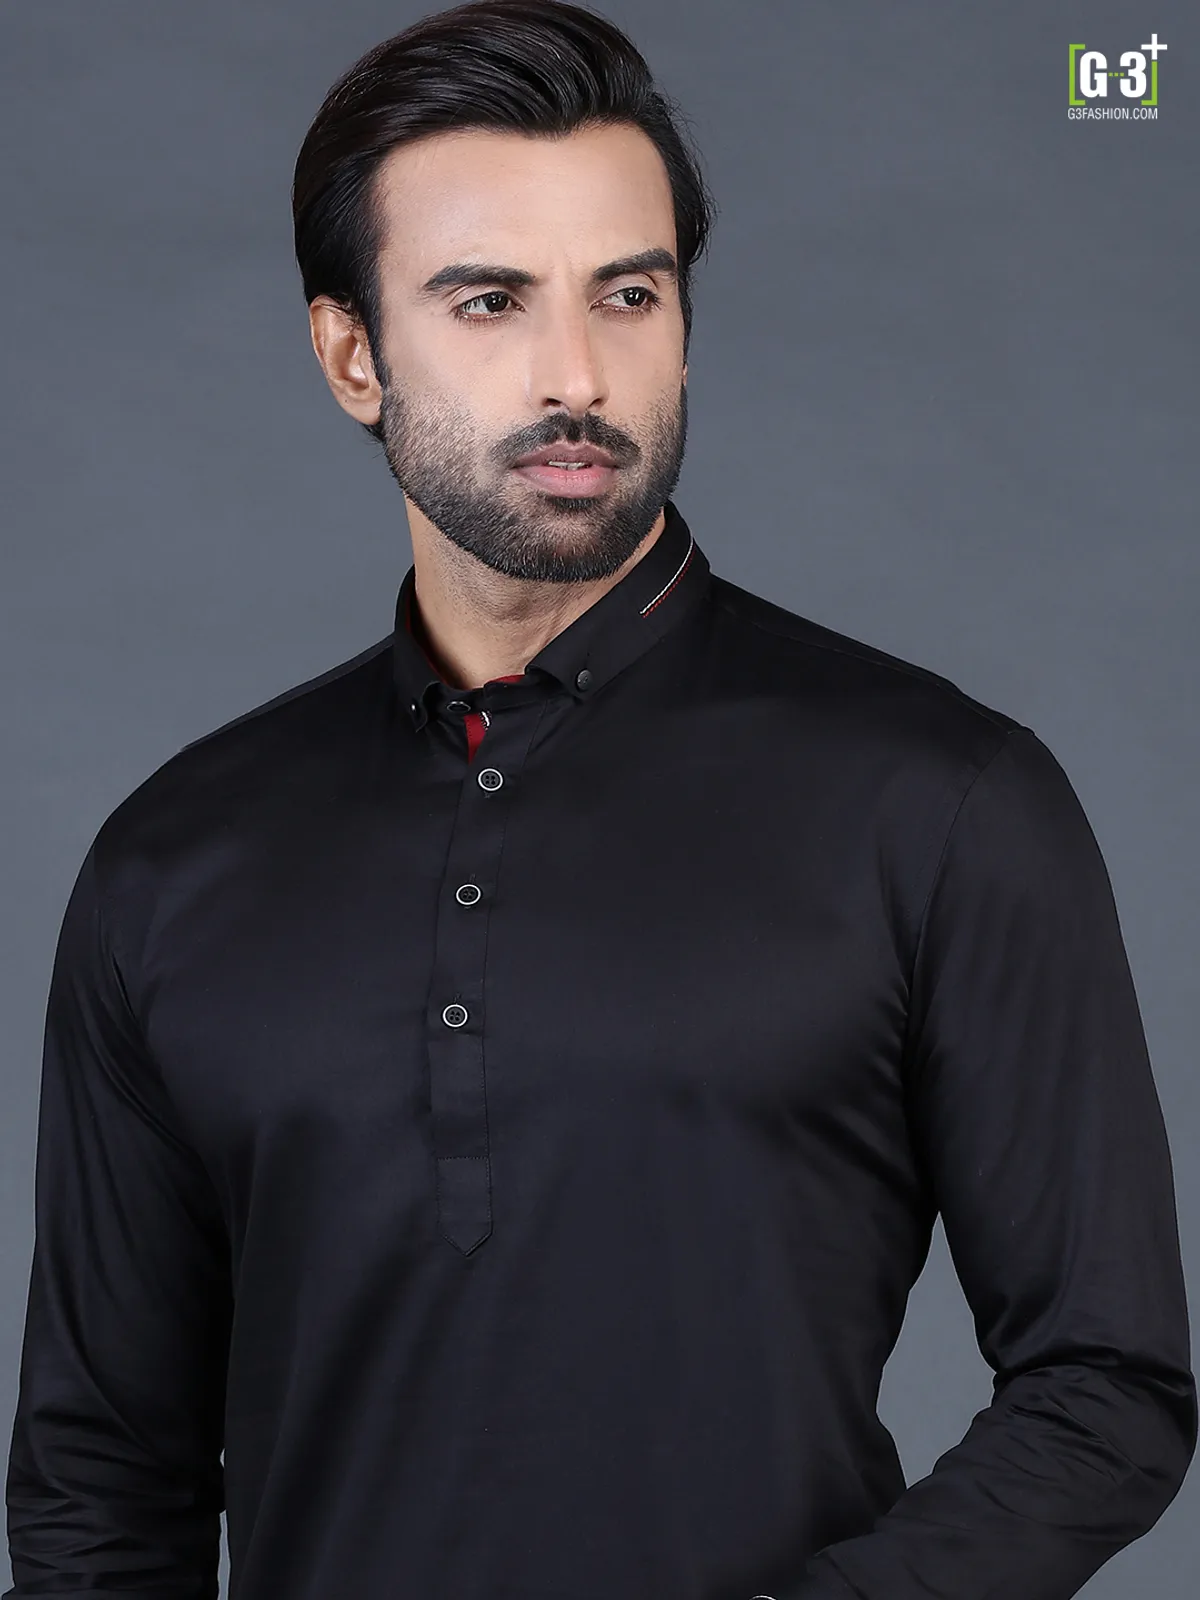 Black festive men cotton pathani suit